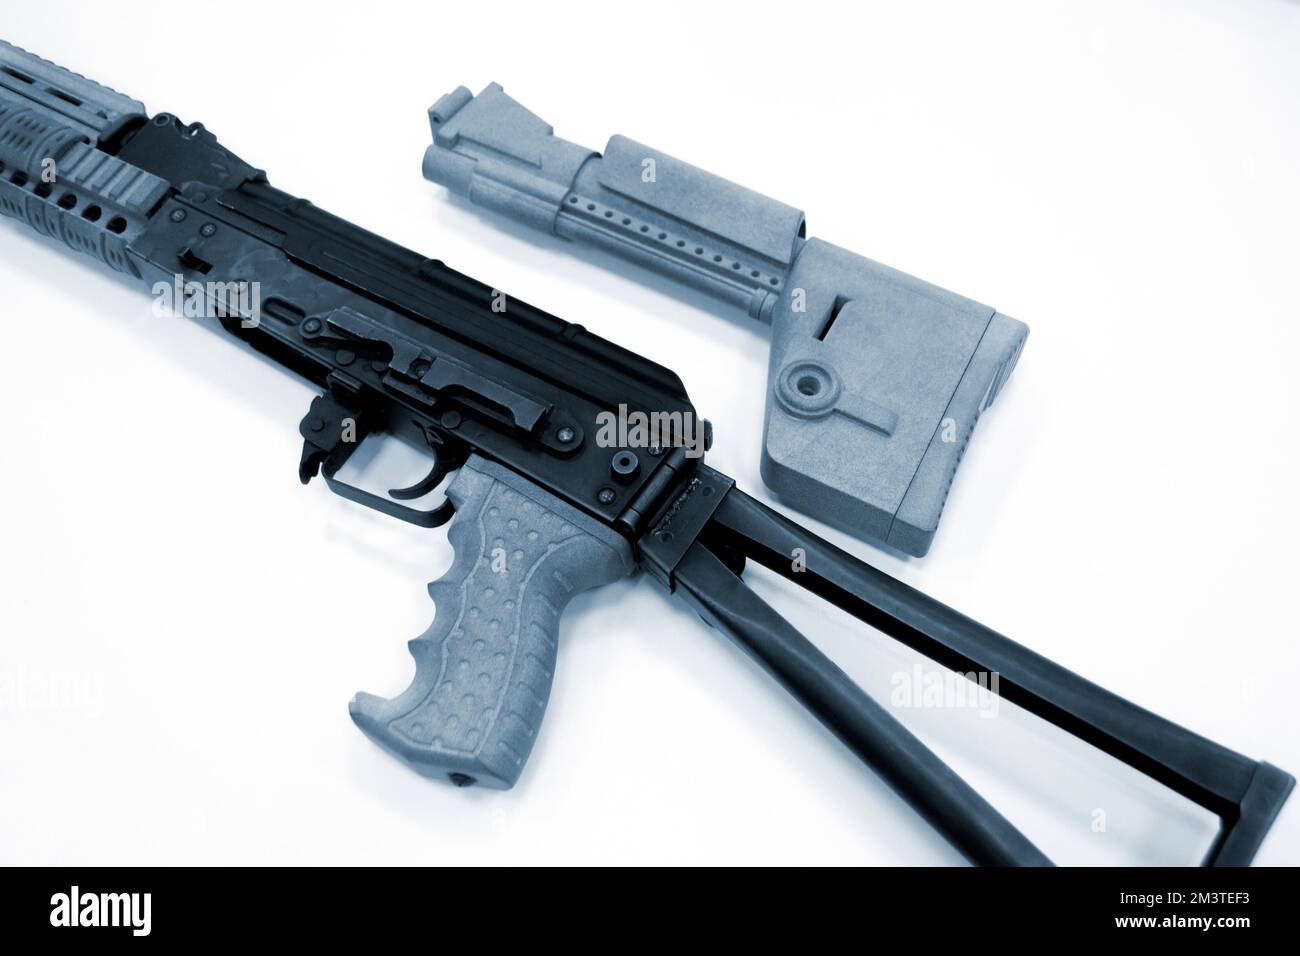 3D parti di arma stampate. Montaggio del fucile da armi, alcune parti stampate su stampante 3D. Dettagli dell'arma di colore grigio stampato su stampante 3D in polvere di poliammide. Tecnologia additiva progressiva Foto Stock